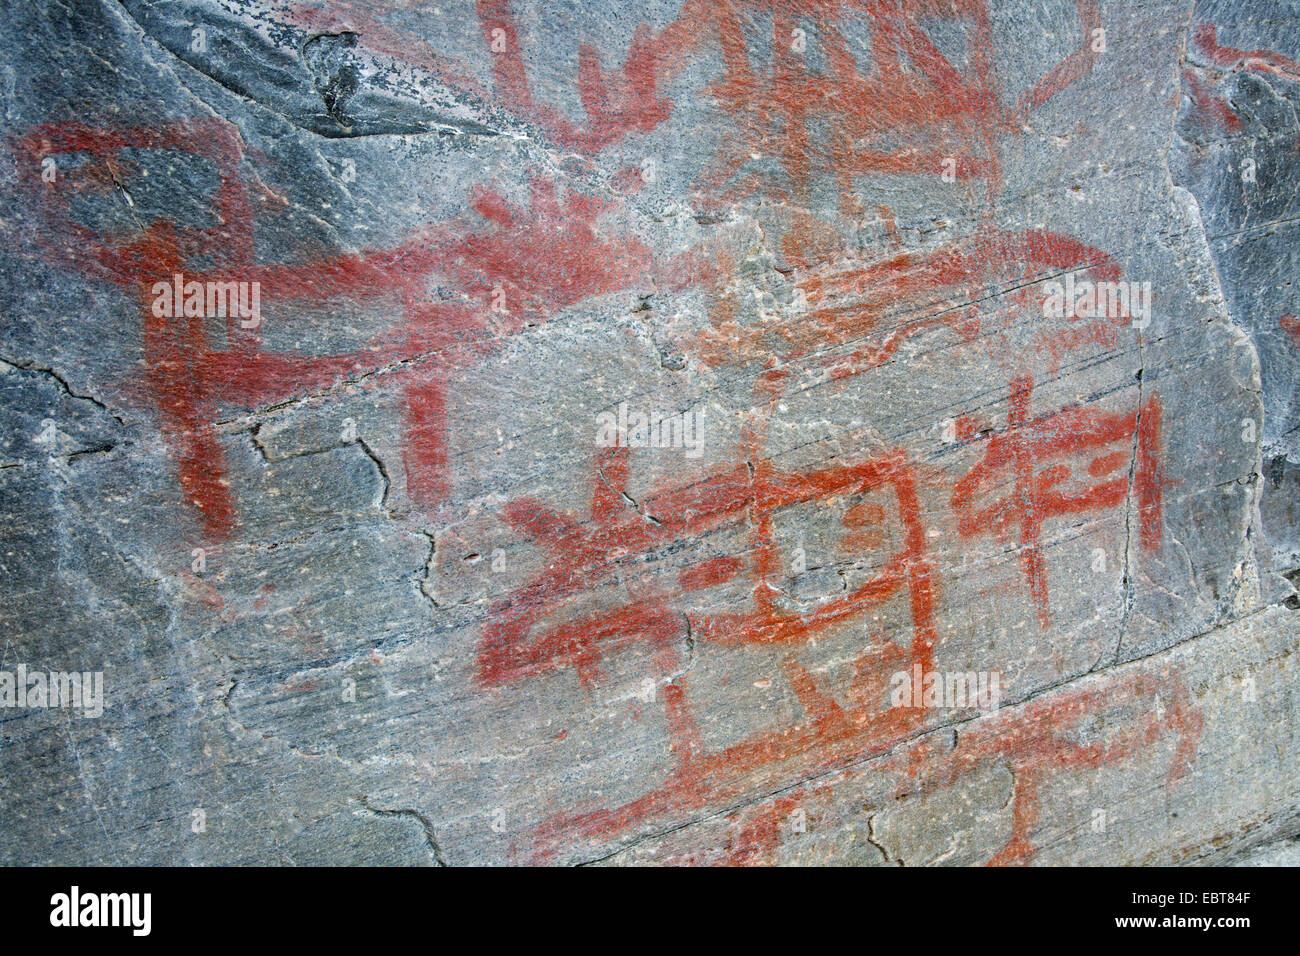 rock paintings in Messlingen, reindeer and moose, Sweden, Flatruet Stock Photo